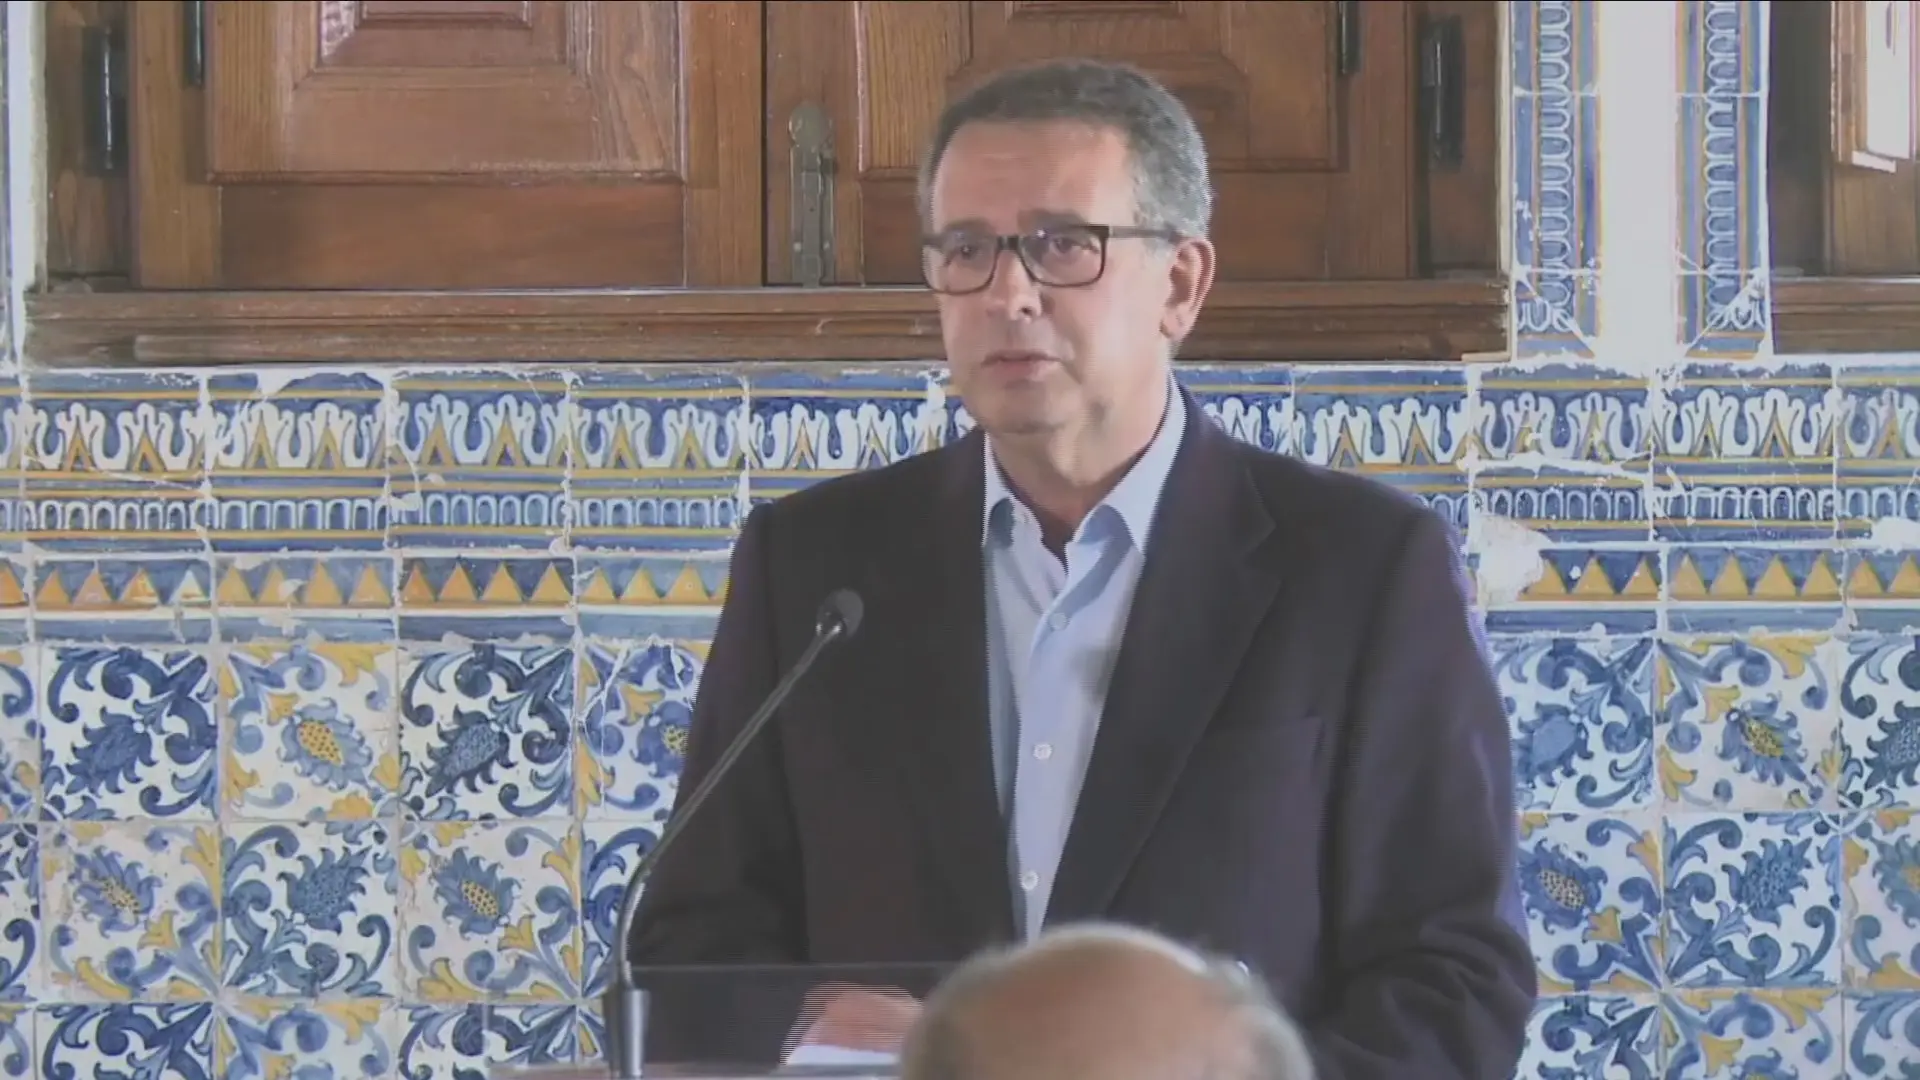 António José Seguro admite voltar à política: "Quando olho para o país fico perplexo, os portugueses merecem melhor"